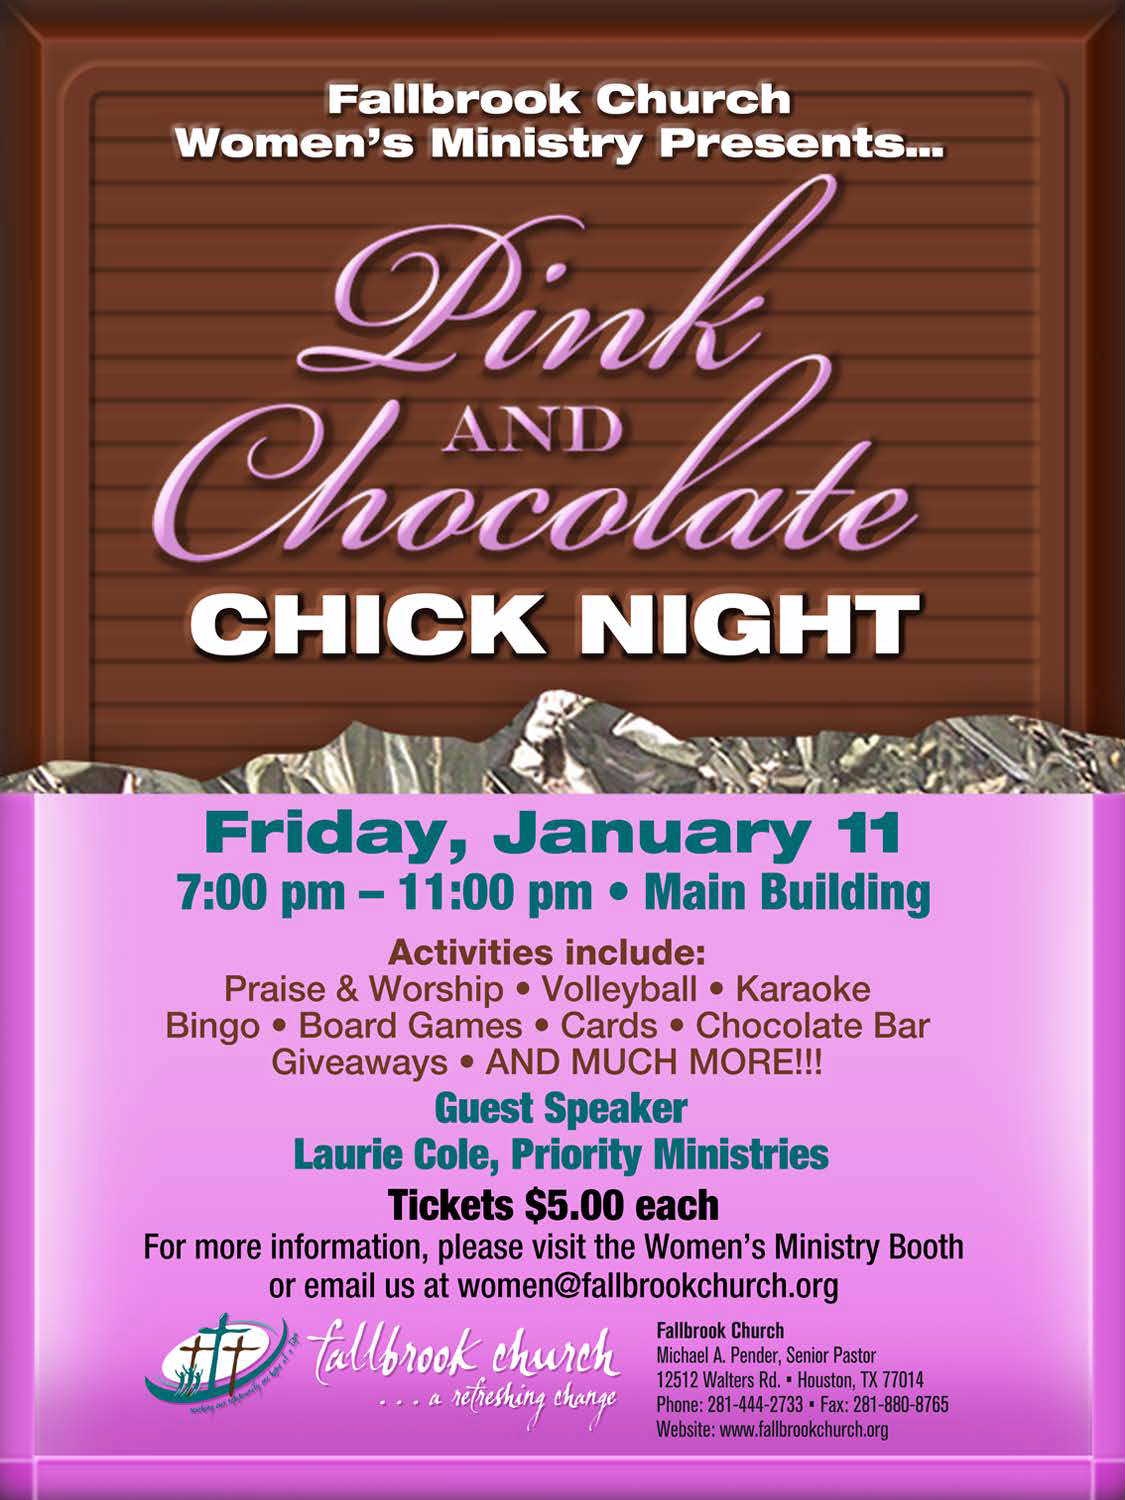 Fallbrook Church Pink & Chocolate Chick Night